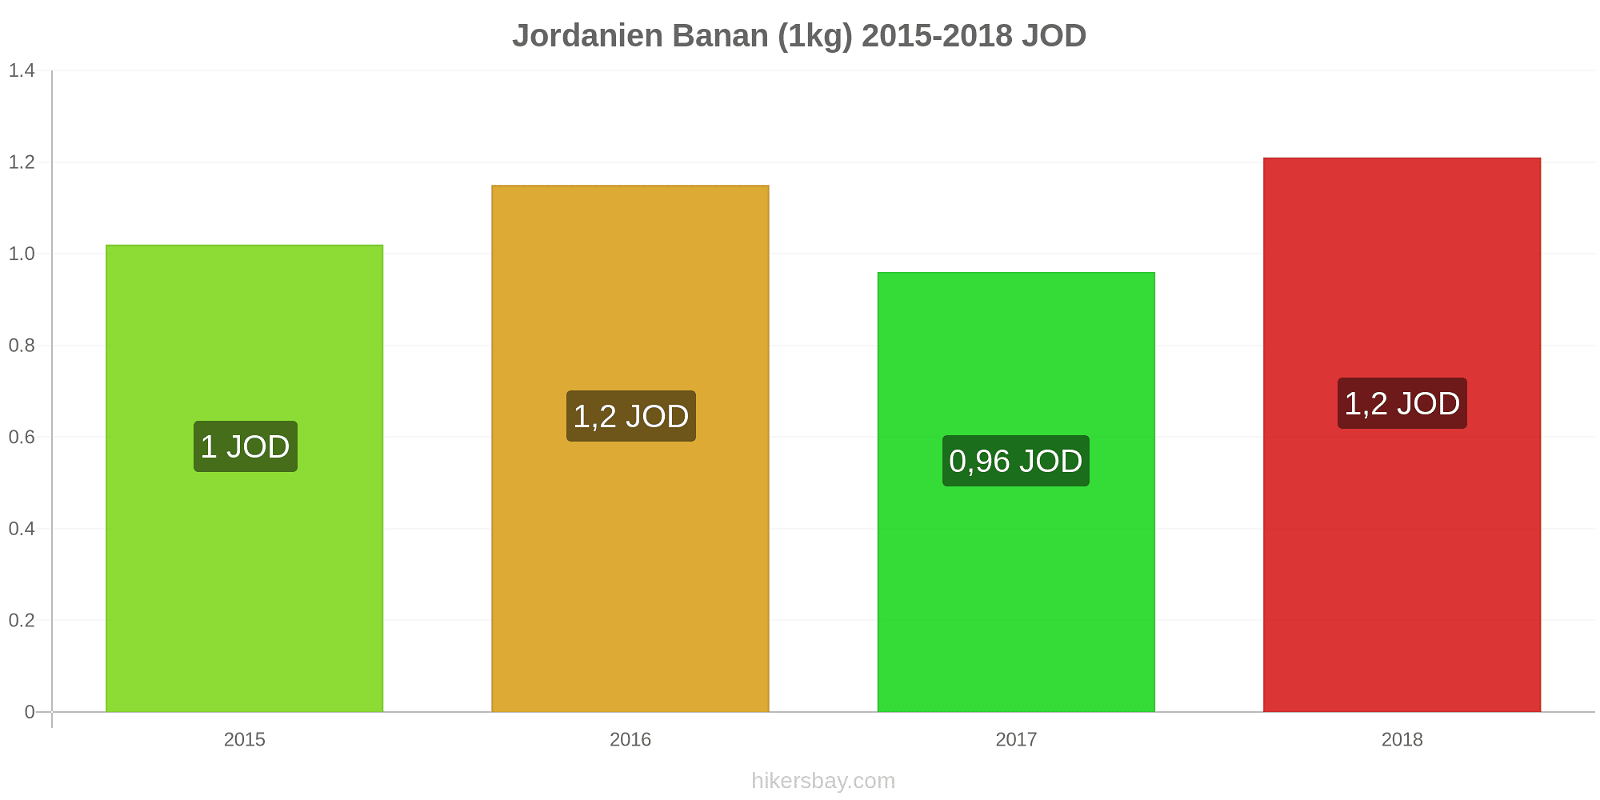 Jordanien prisändringar Bananer (1kg) hikersbay.com